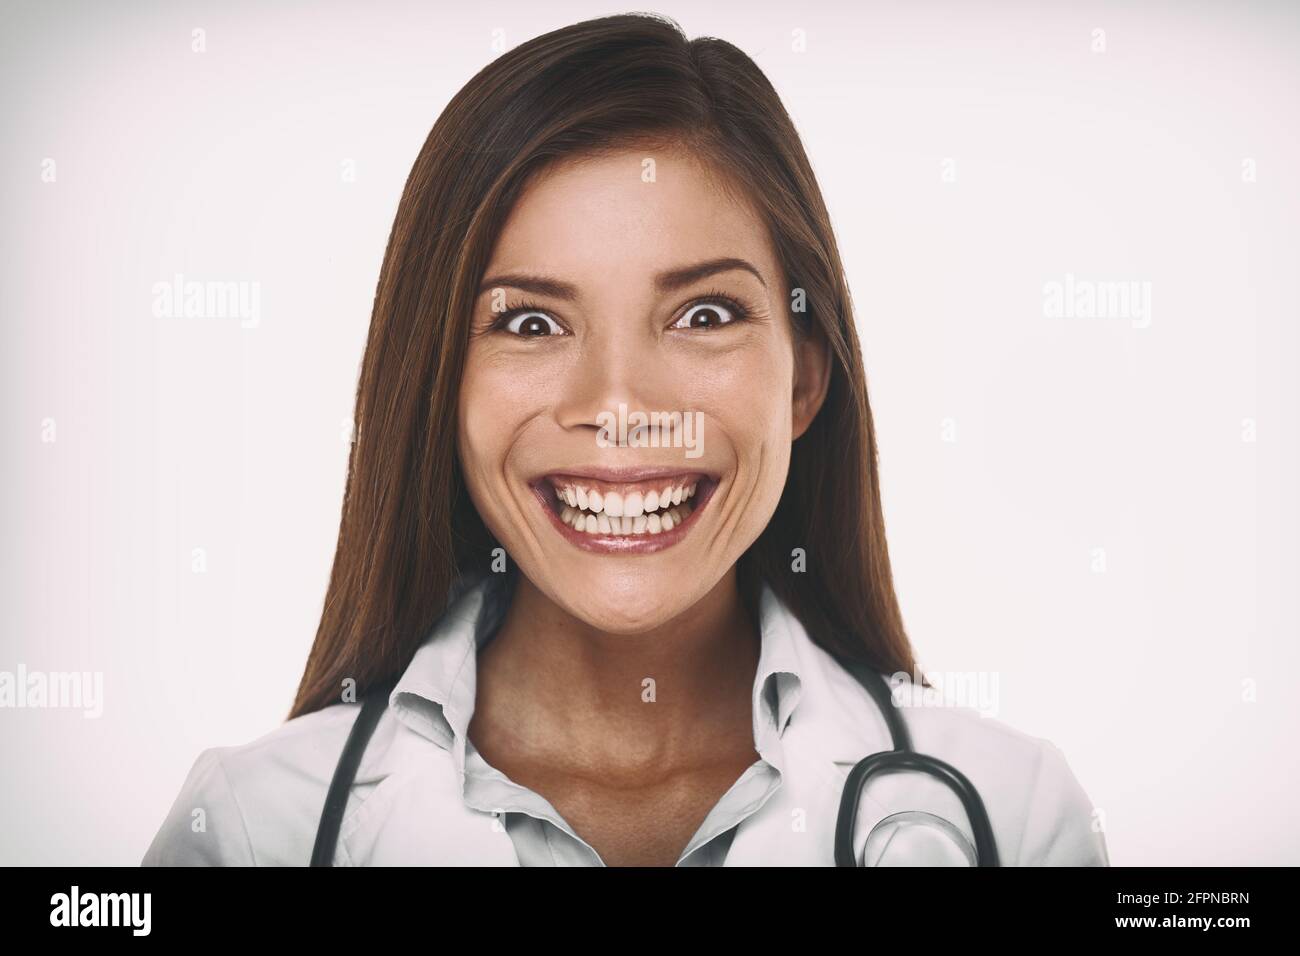 Böses Lächeln bedeutet Psychopath Arzt Konzept. Unheimlich verrückt asiatische professionelle Porträt Frau lächelt mit einem böswilligen Lachen verrückt aussehen. Stockfoto